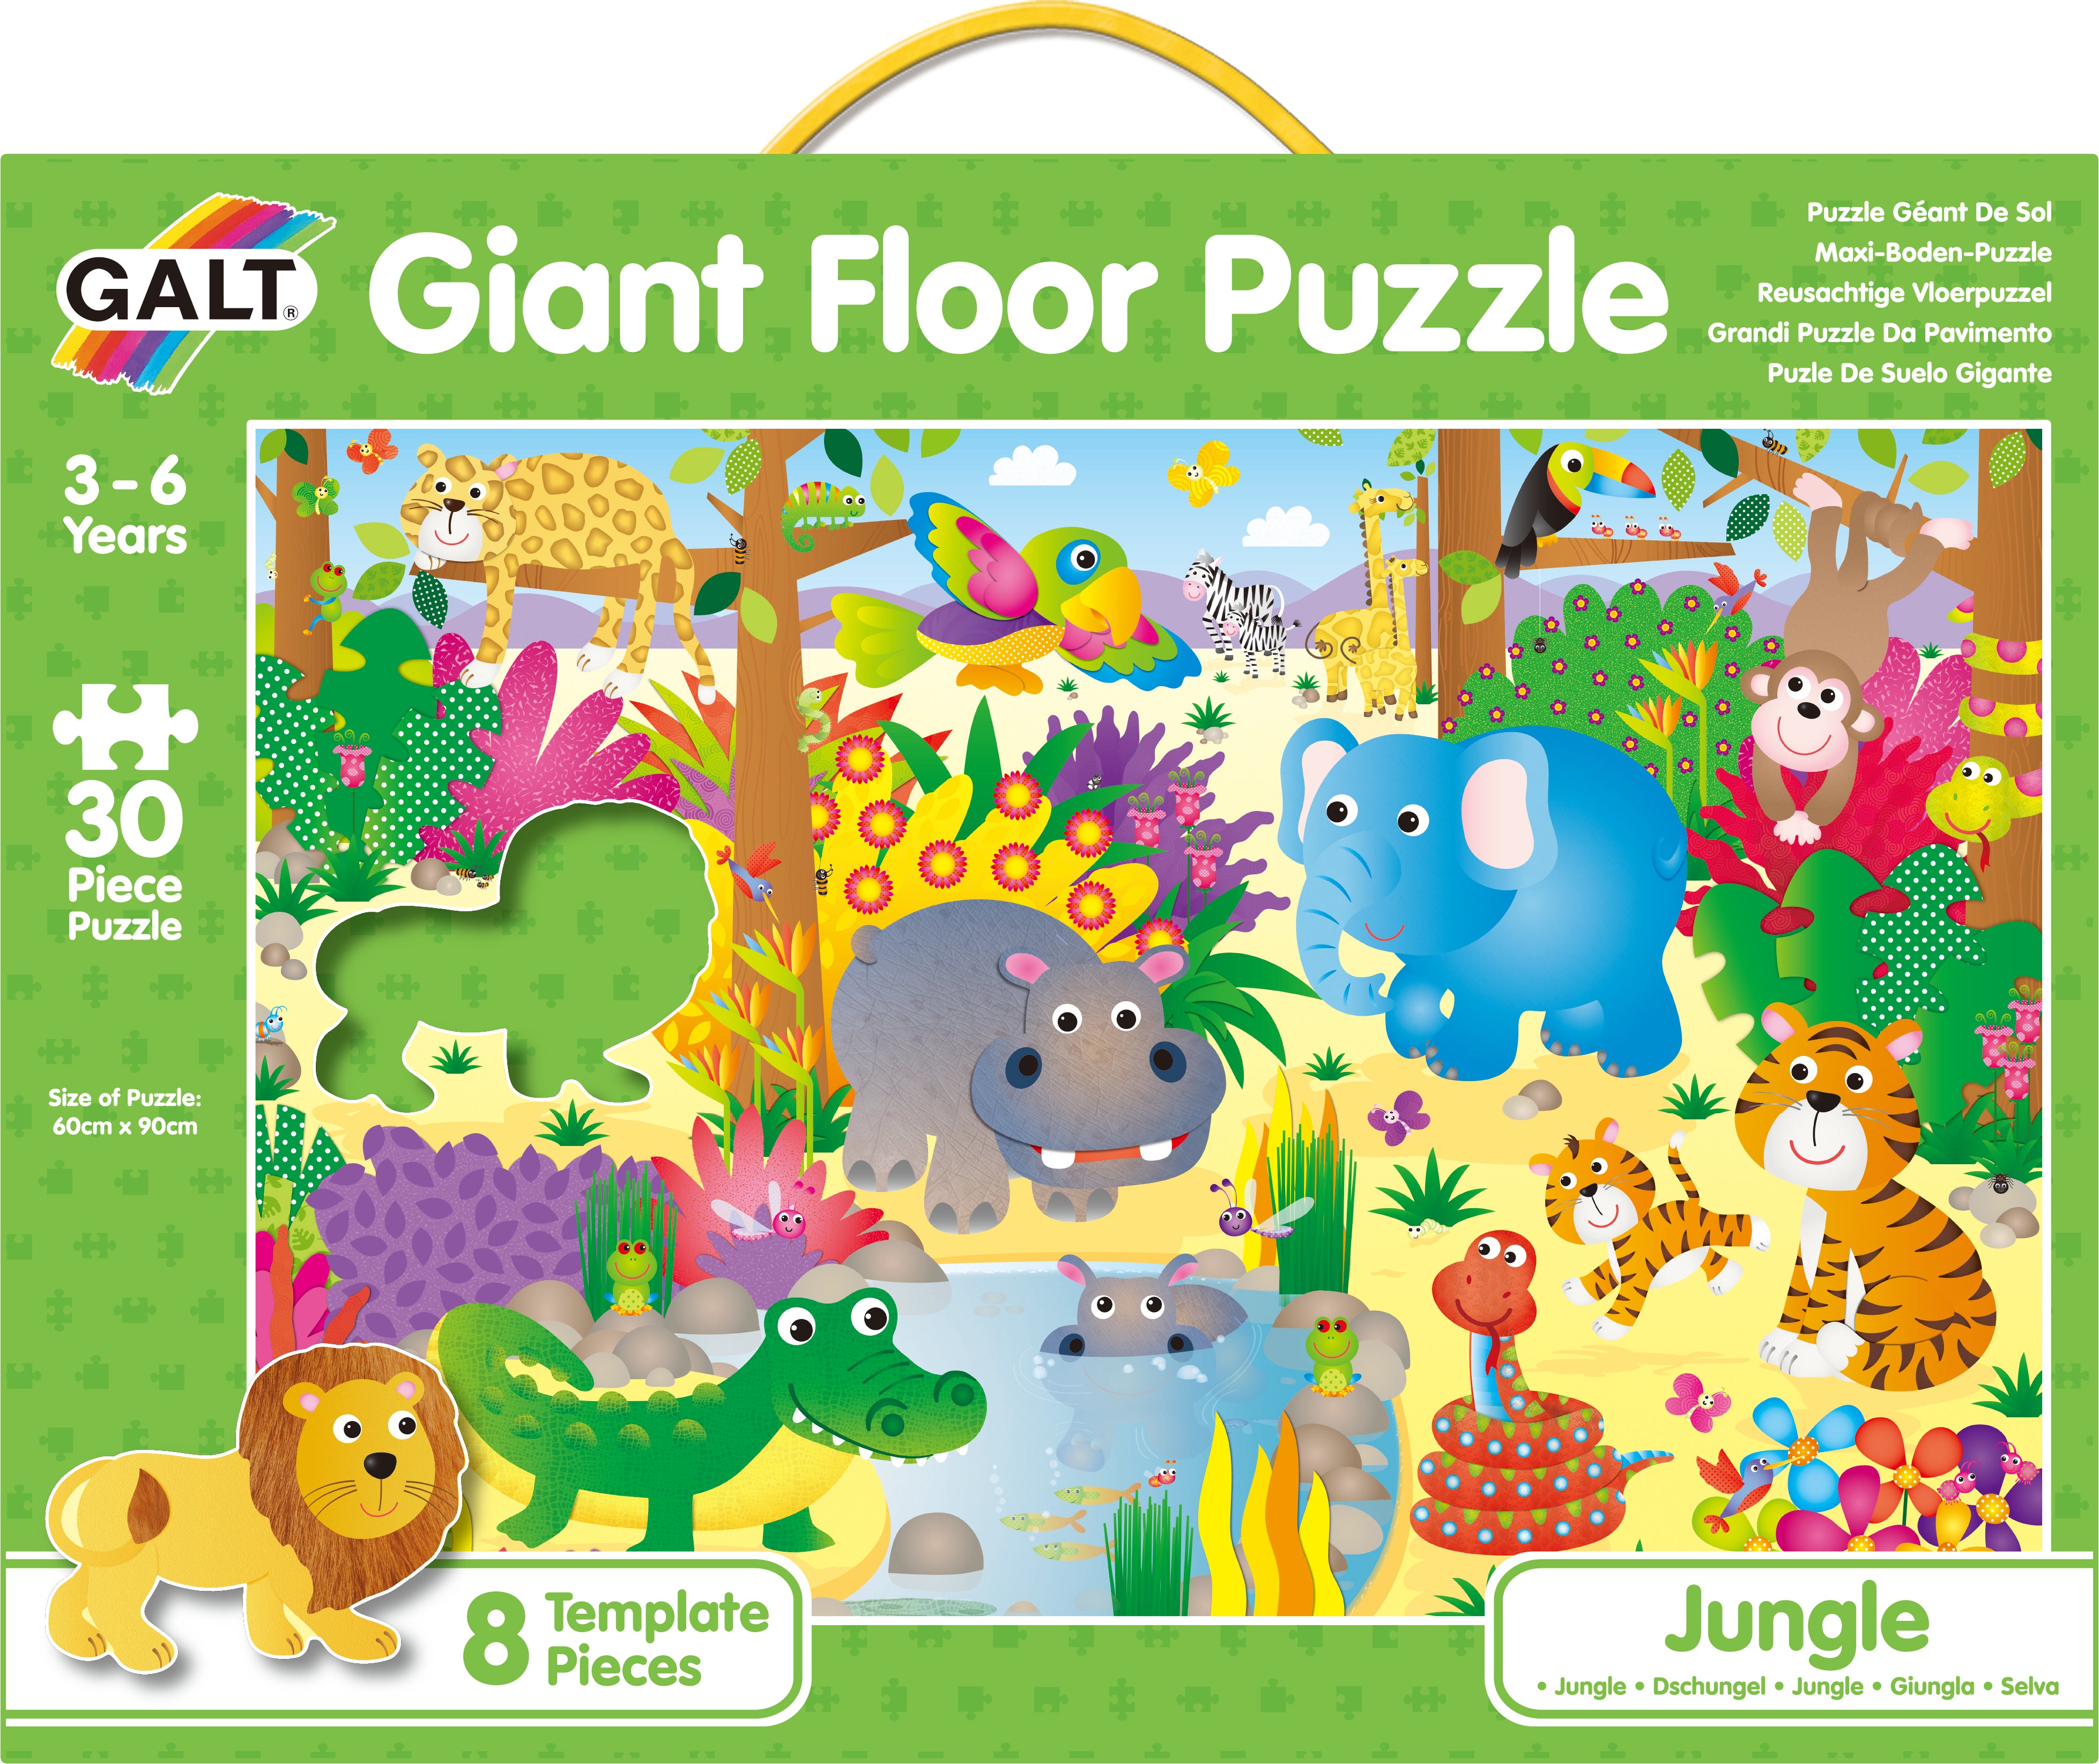 Galt - Giant Floor Puzzle - Jungle